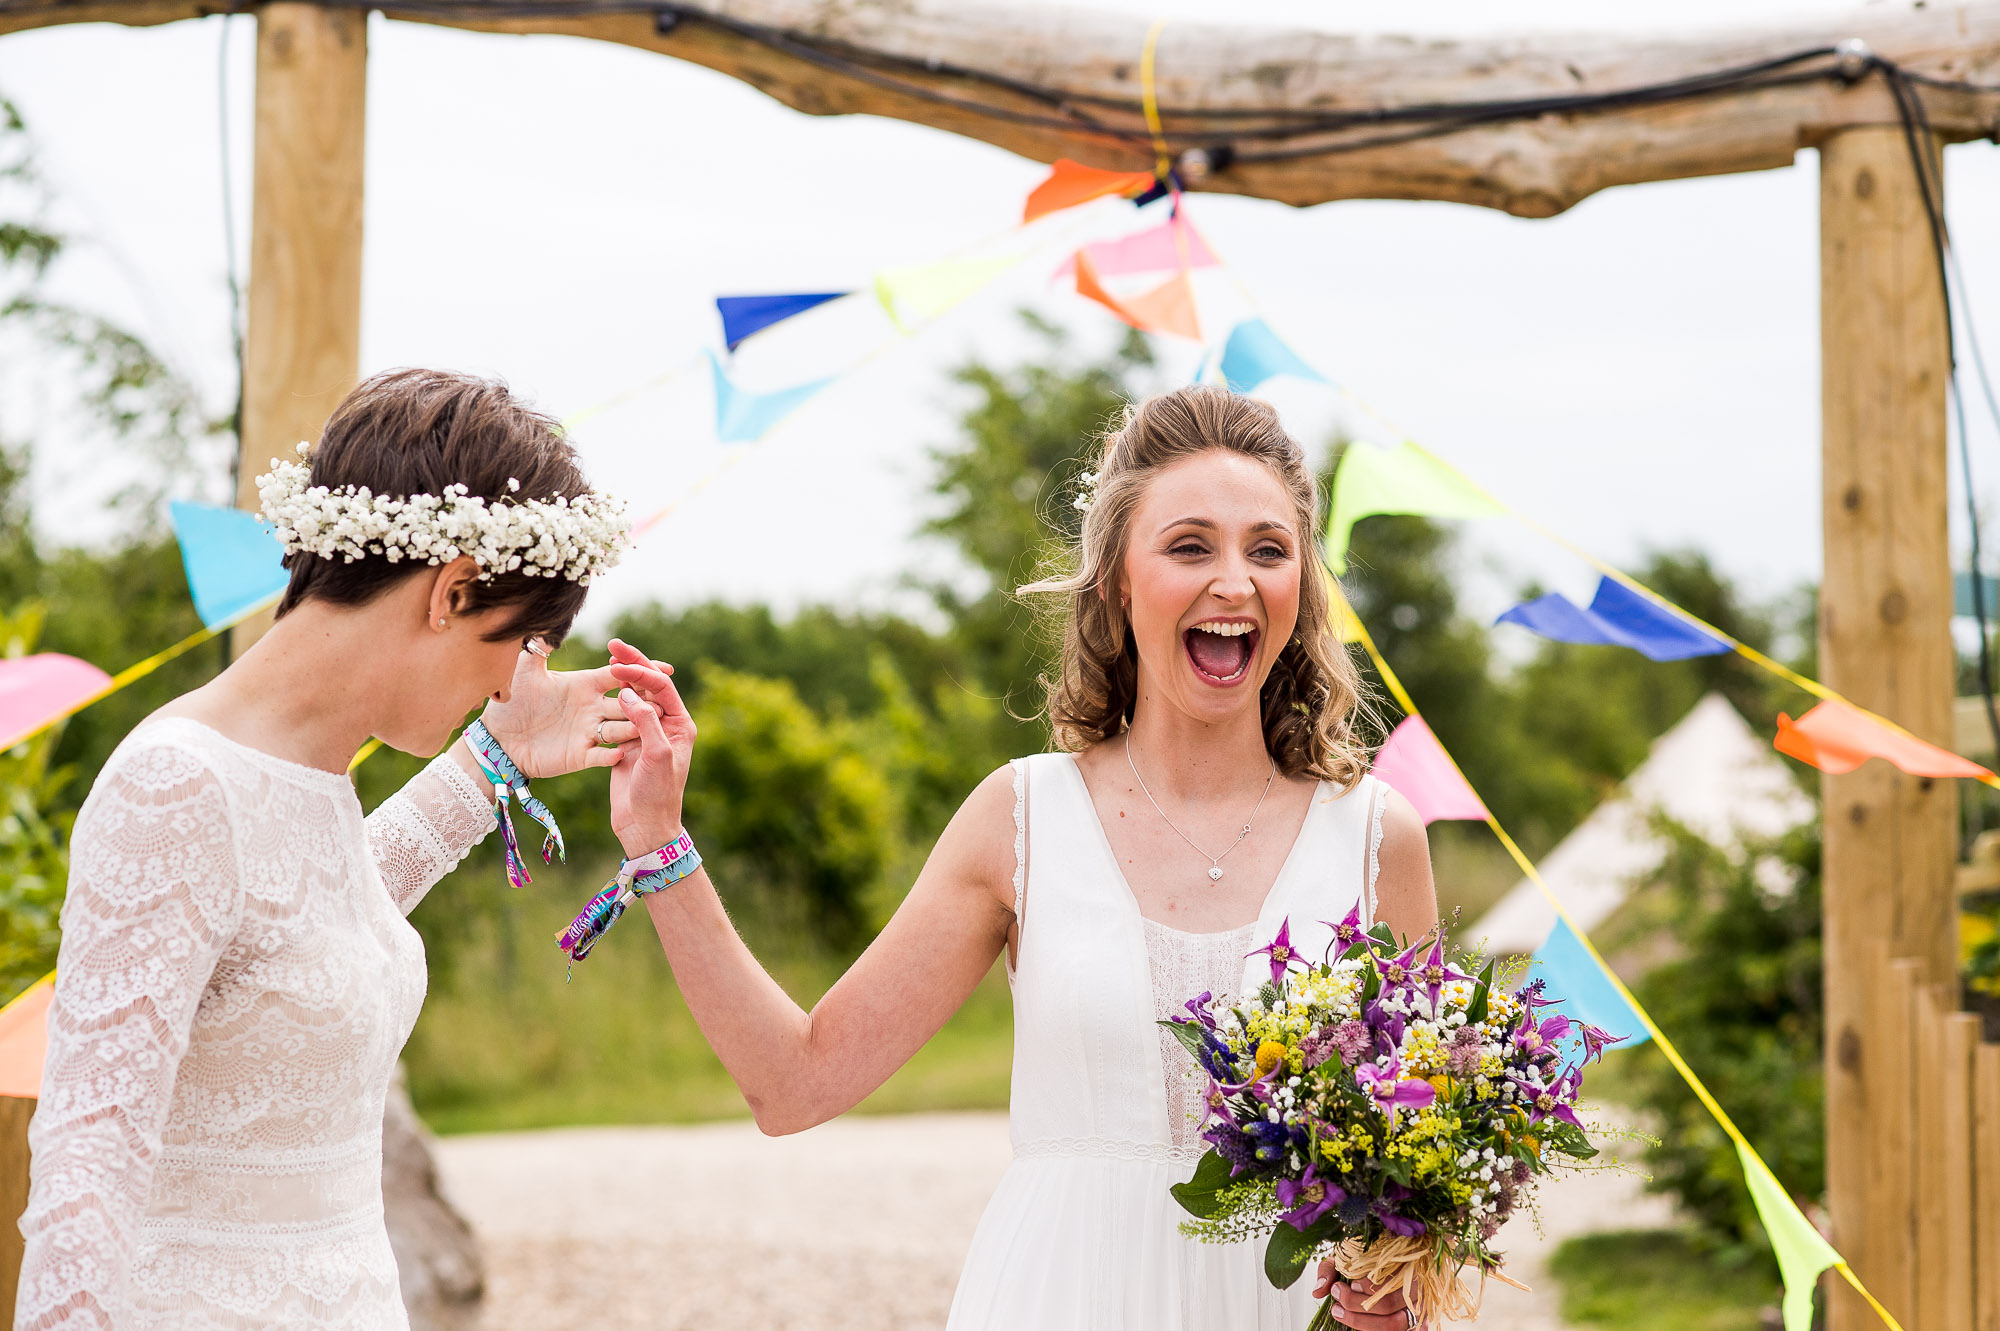 Wedding Day Timeline - Newley Wed Couple Excited and Joyful - Outdoor Surrey Wedding